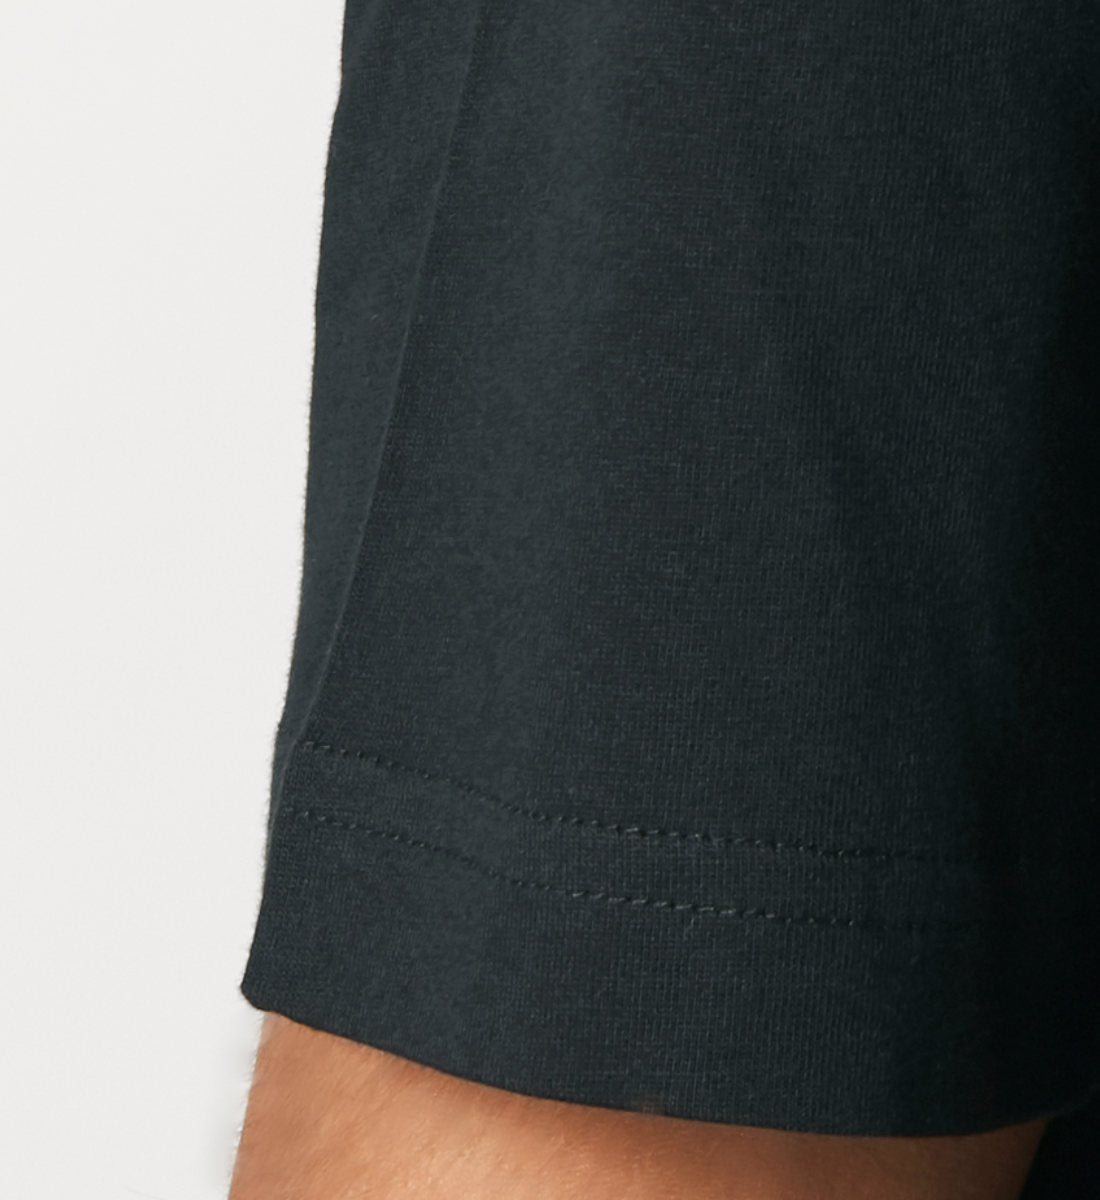 Schwarzes T-Shirt Unisex Relaxed Fit für Frauen und Männer bedruckt mit dem Design der Roger Rockawoo Kollektion Guitar Lofi Life Shoes